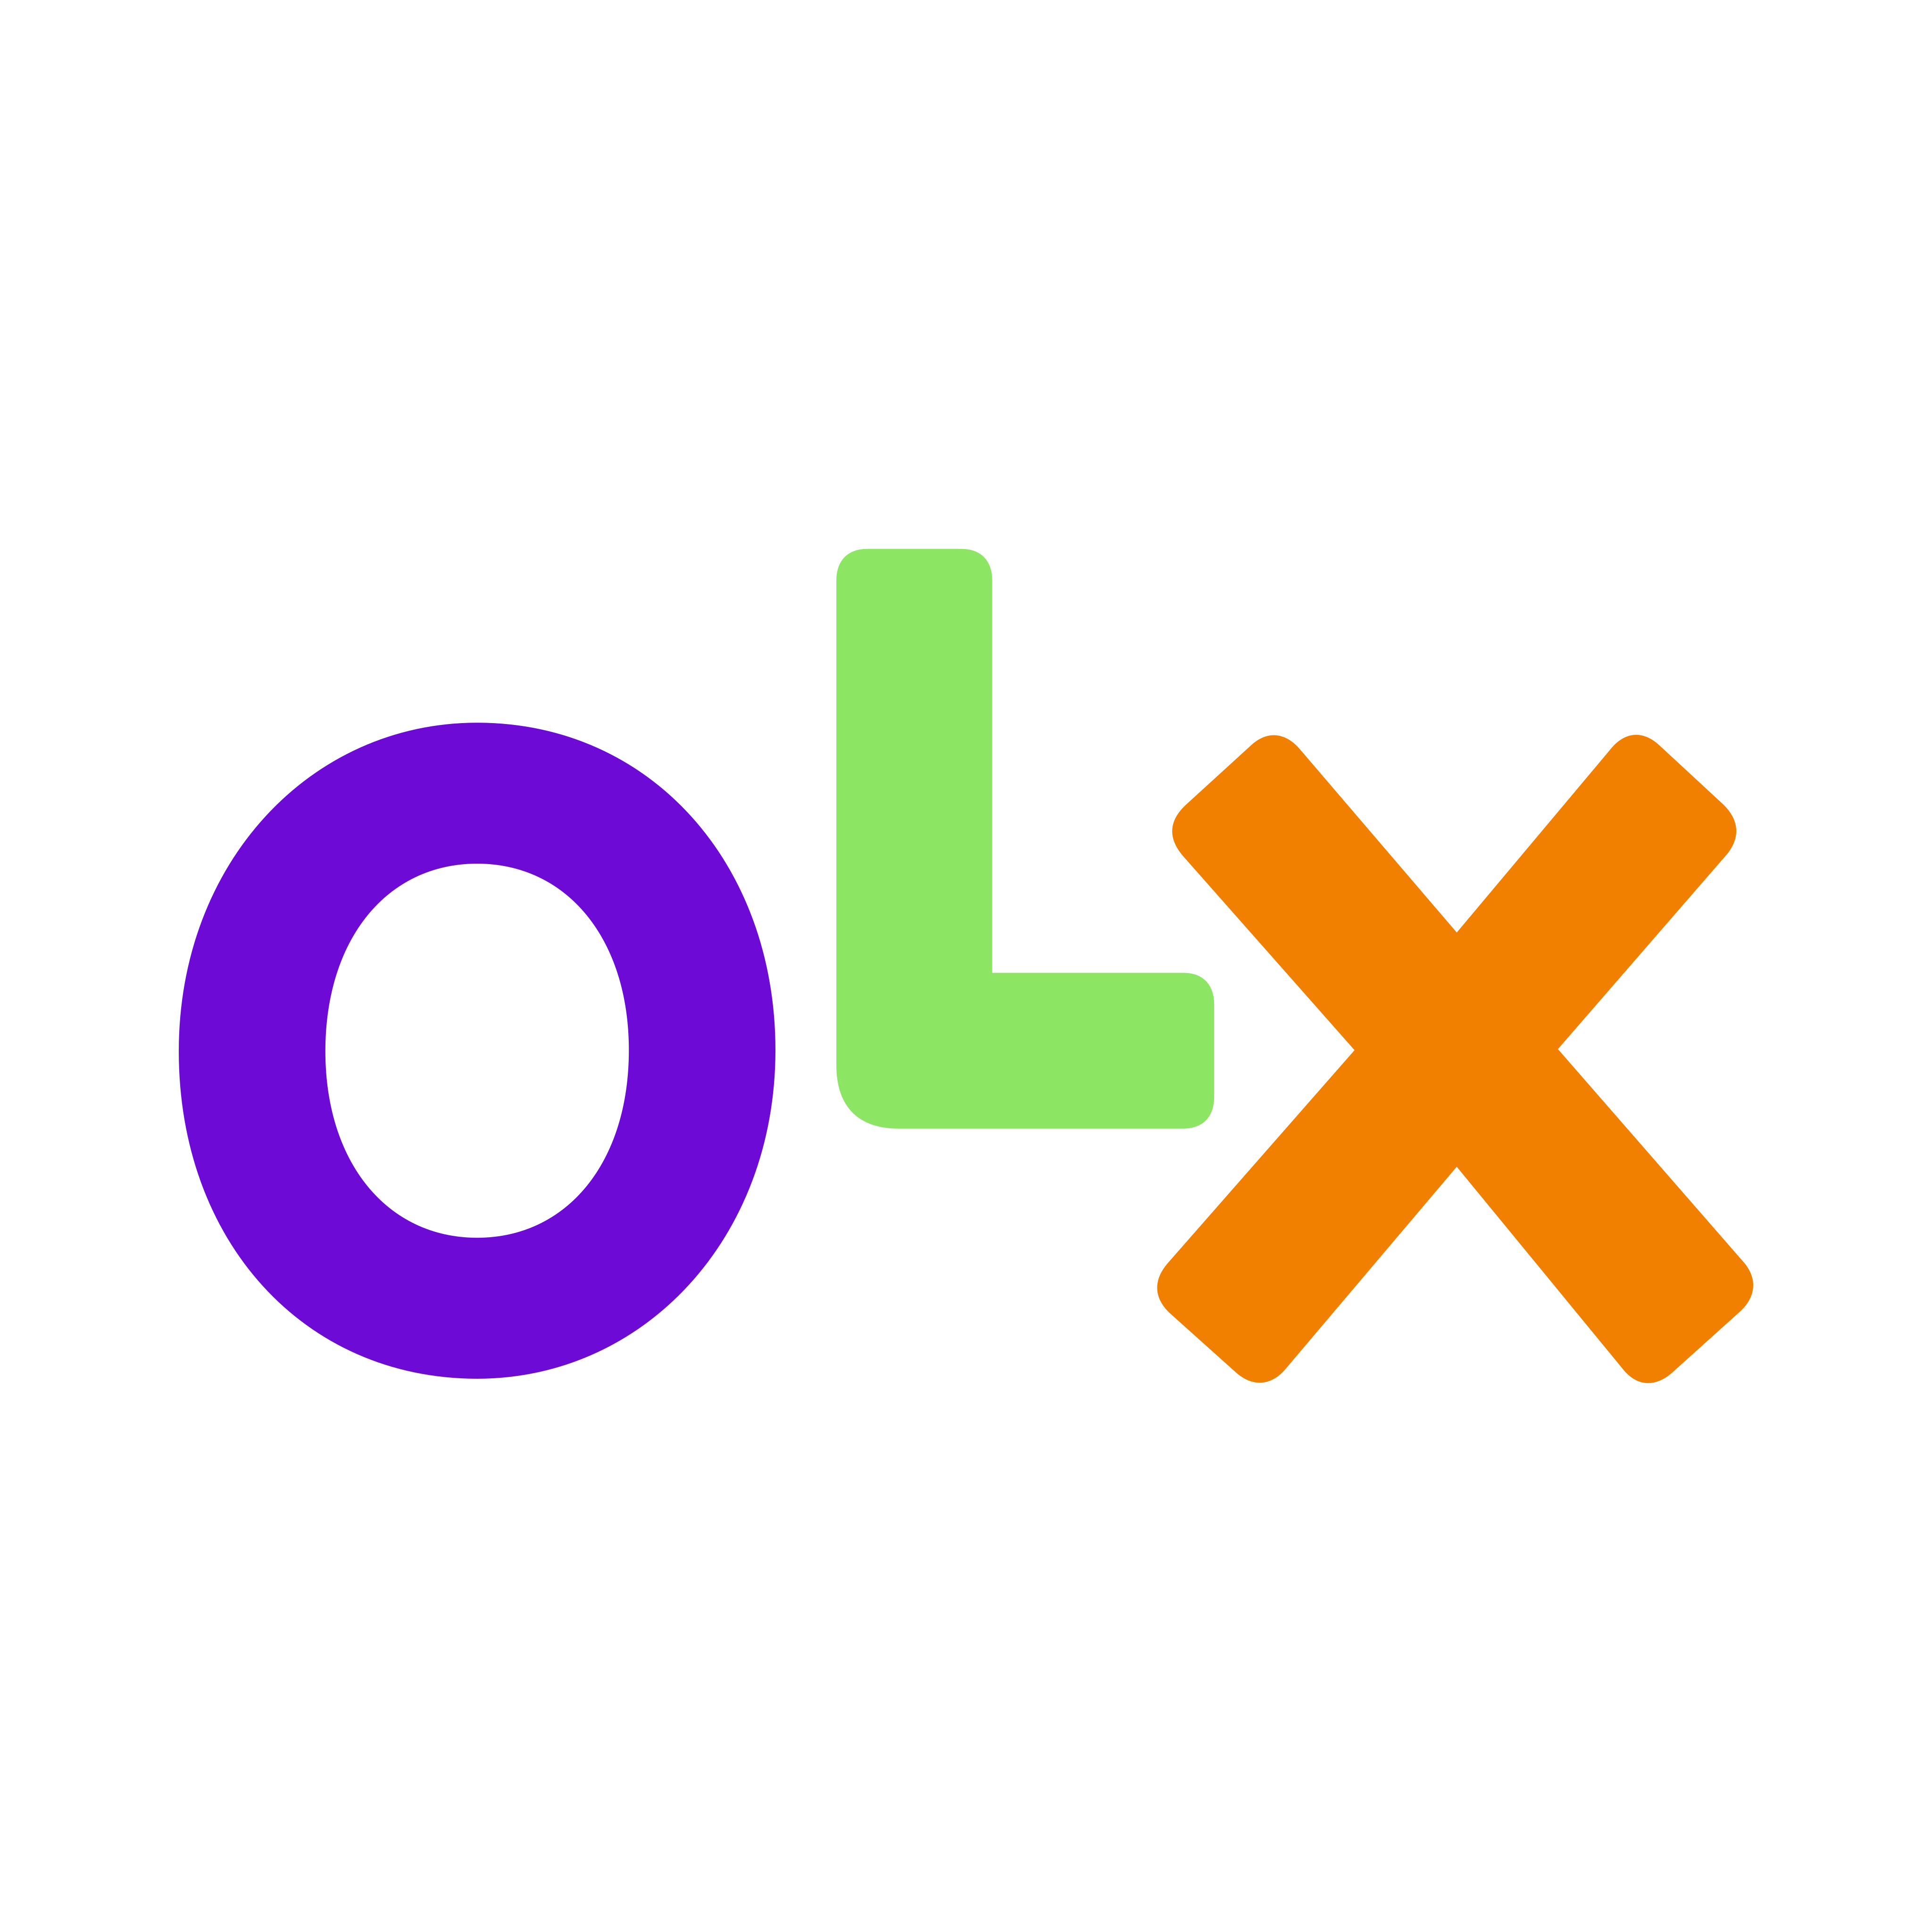 olx logo 0 - OLX Logo